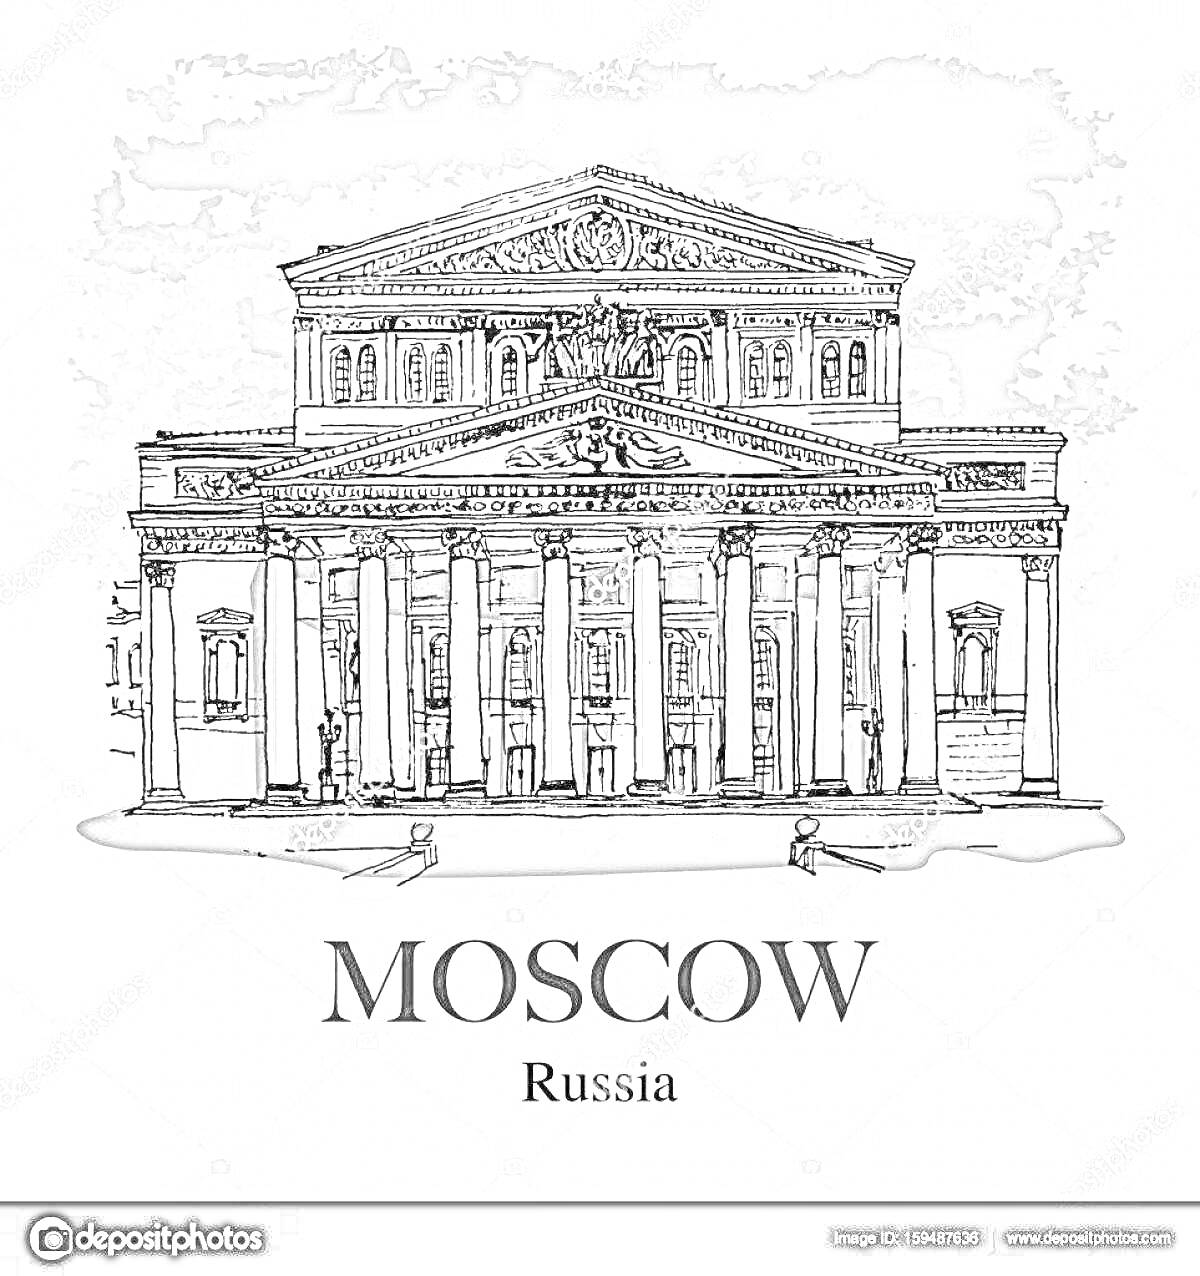 Раскраска Большой театр в Москве, Russia, рисунок фасада с колоннами и скульптурами на фронтоне